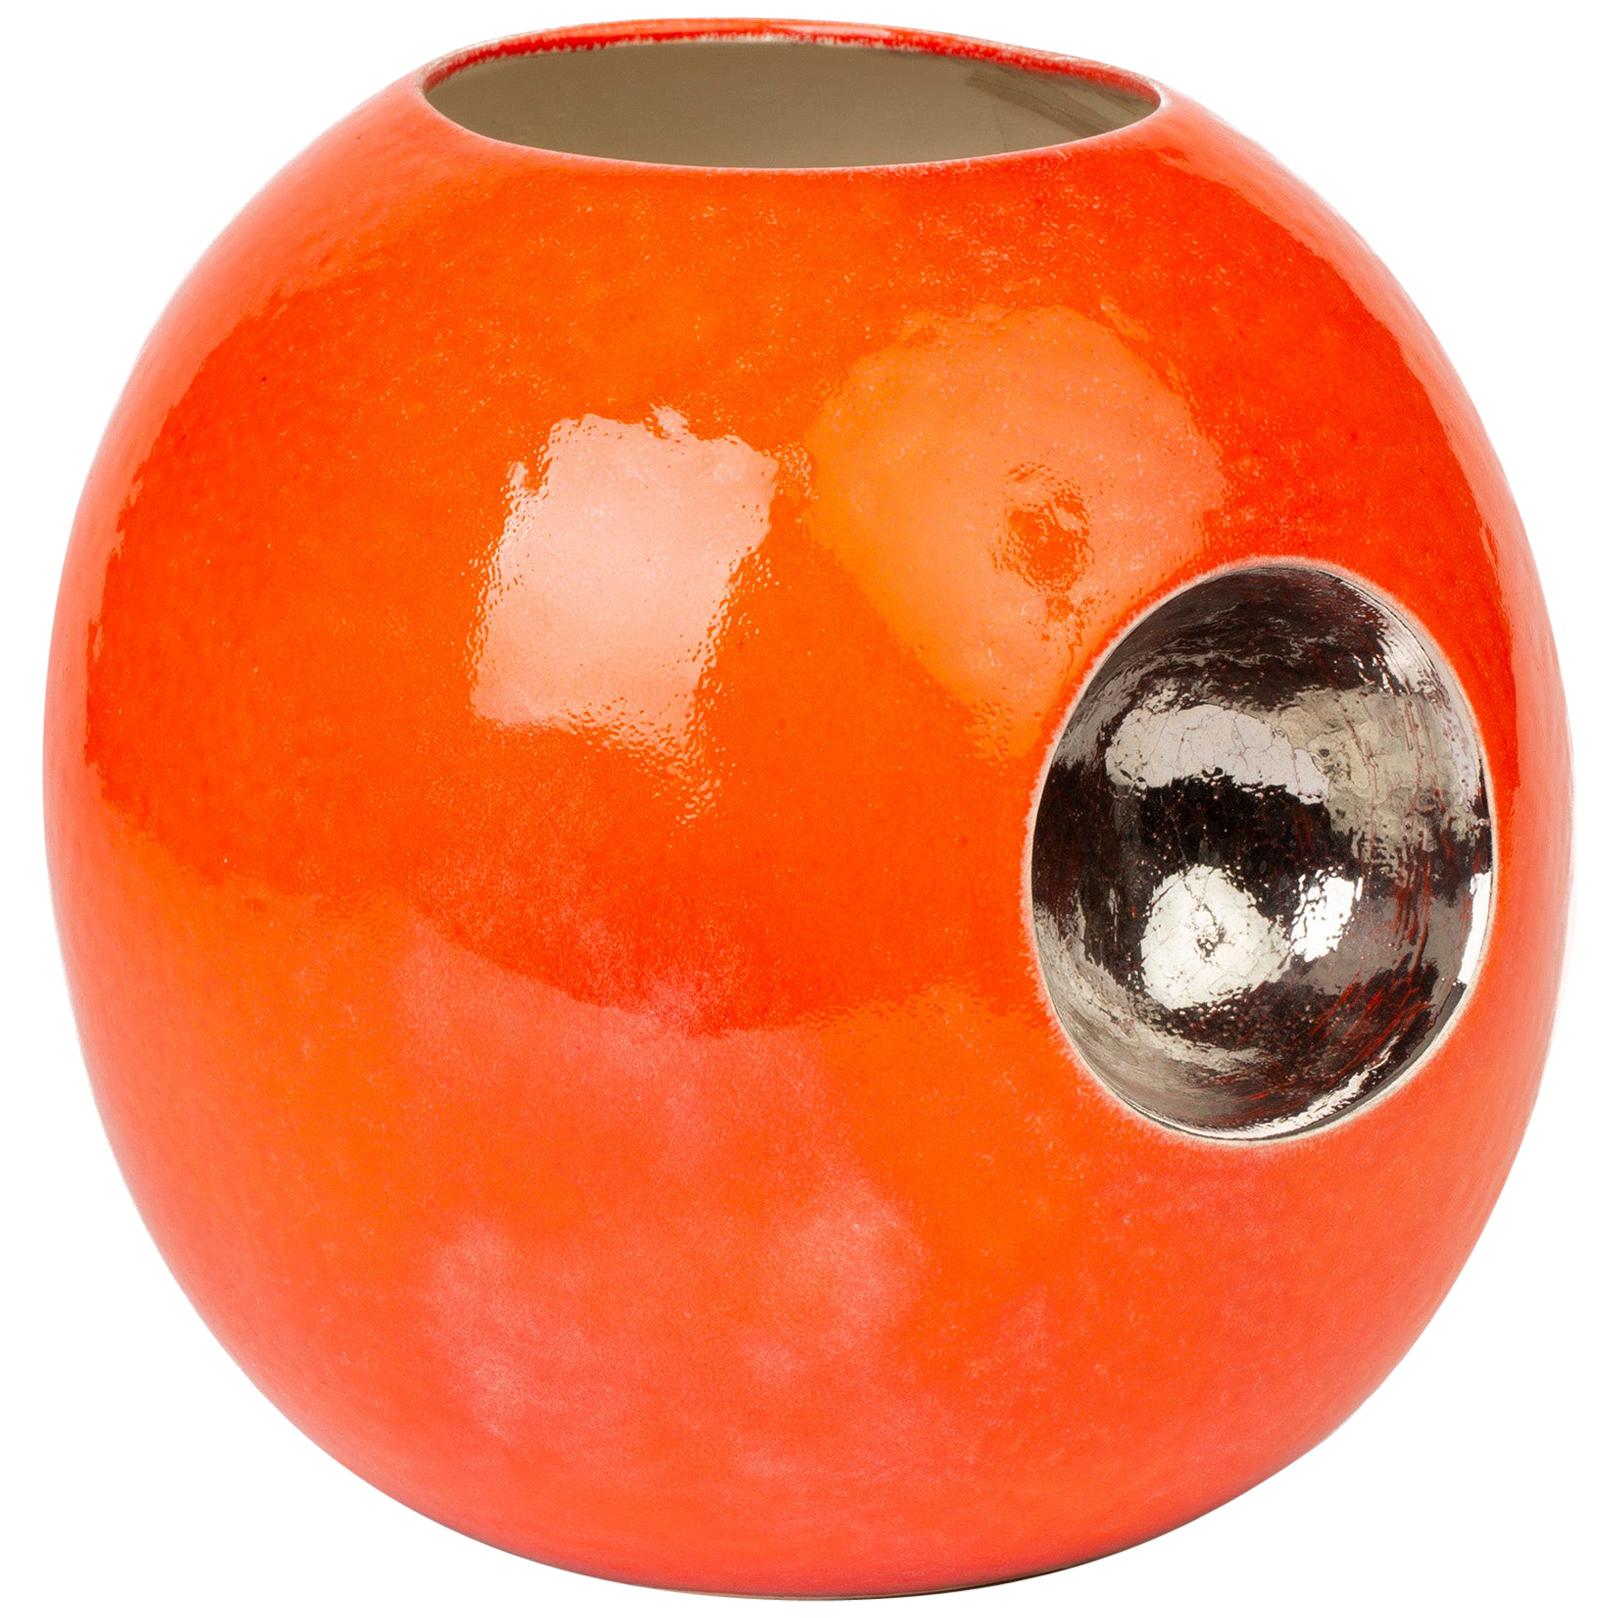 Stylish Contemporary Orange Glazed Globular Vase Signed Morgan Dated 2004 For Sale